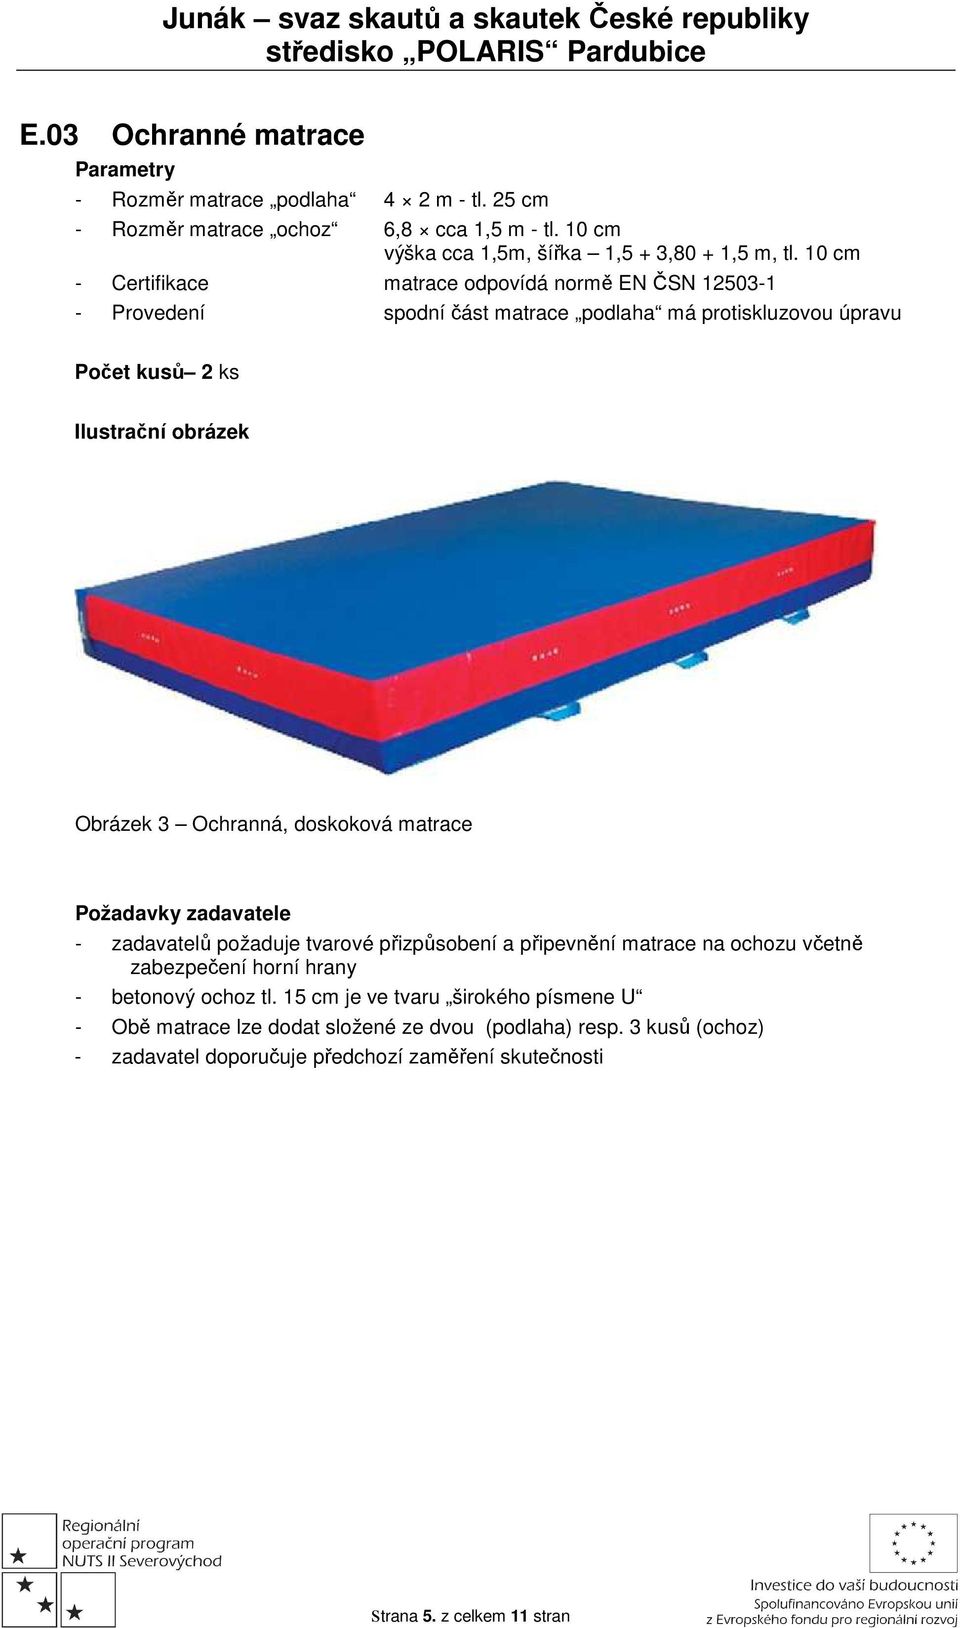 doskoková matrace - zadavatelů požaduje tvarové přizpůsobení a připevnění matrace na ochozu včetně zabezpečení horní hrany - betonový ochoz tl.